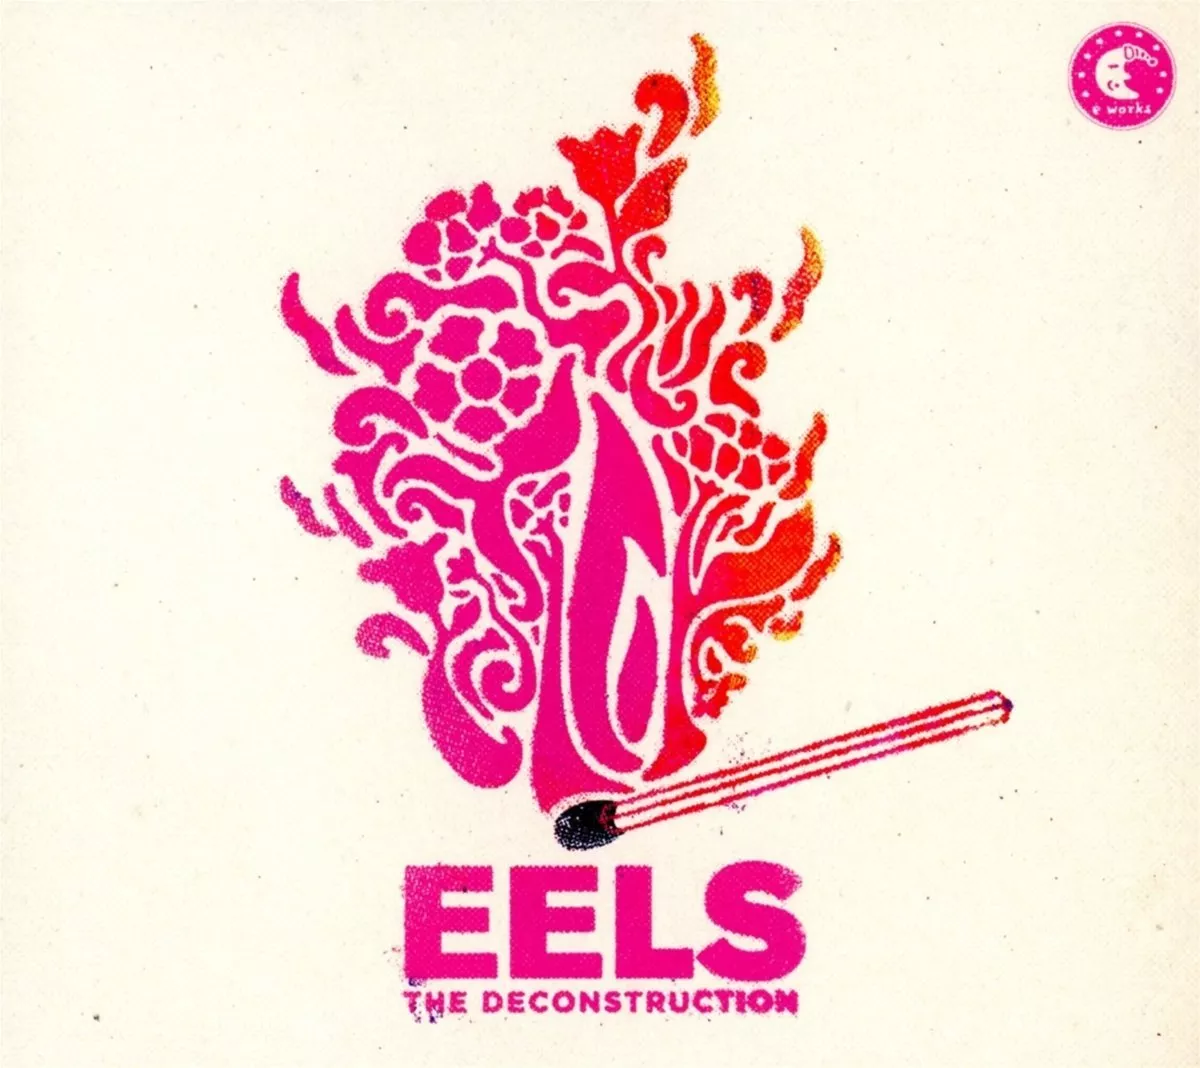 The Deconstruction - Eels